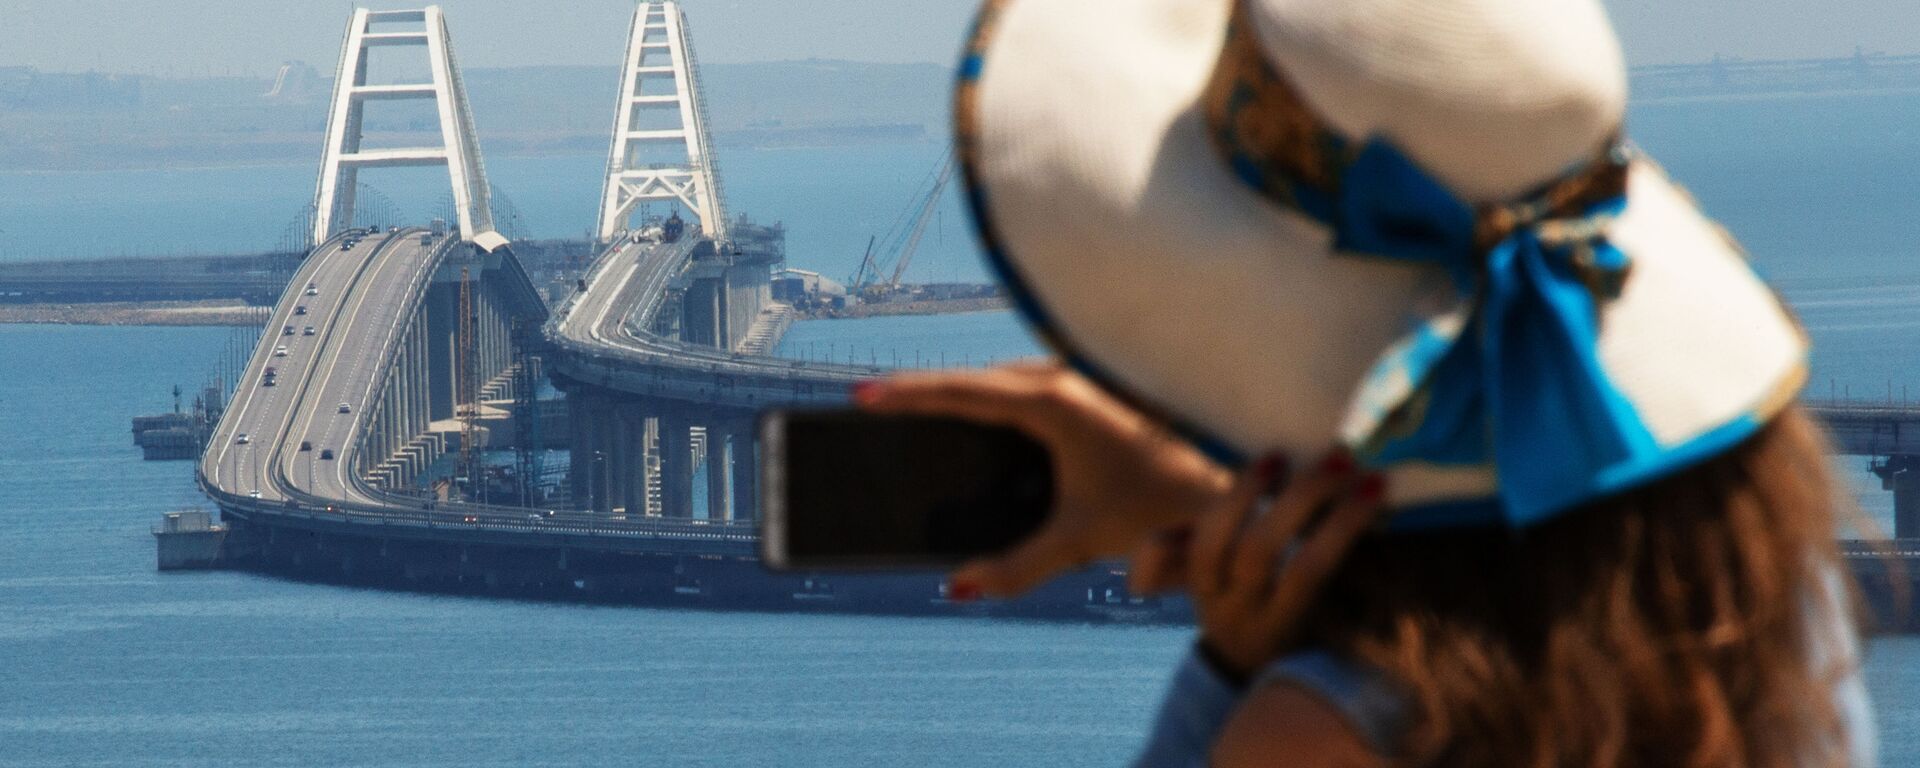 Девушка фотографирует Крымский мост через Керченский пролив - Sputnik Узбекистан, 1920, 26.05.2020